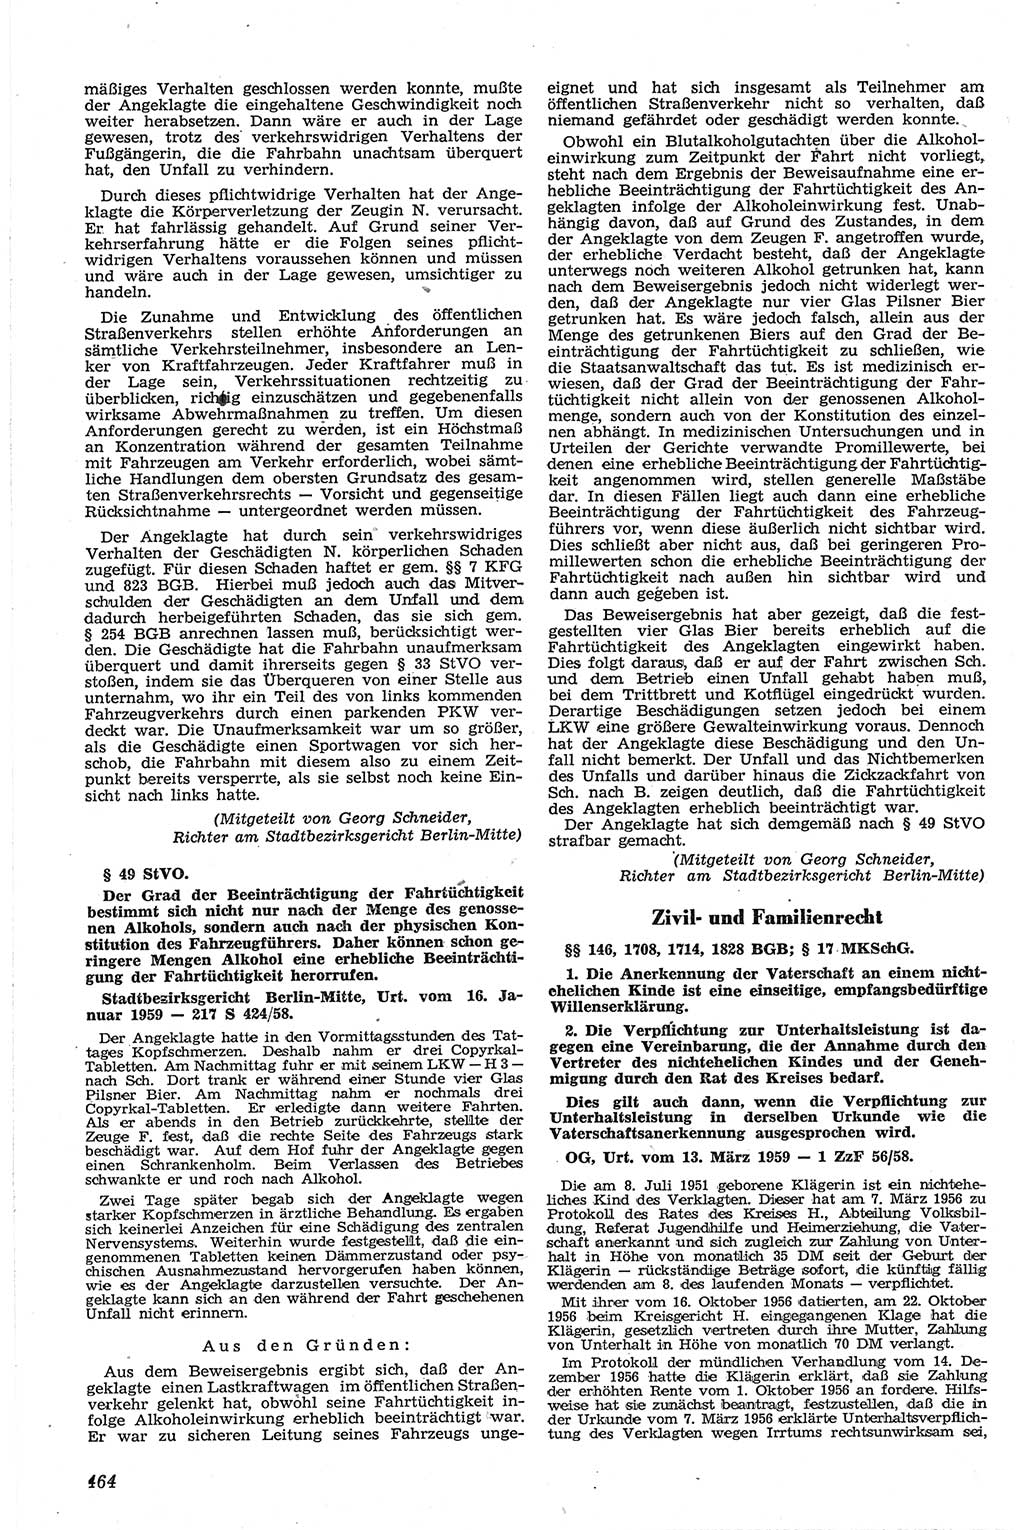 Neue Justiz (NJ), Zeitschrift für Recht und Rechtswissenschaft [Deutsche Demokratische Republik (DDR)], 13. Jahrgang 1959, Seite 464 (NJ DDR 1959, S. 464)